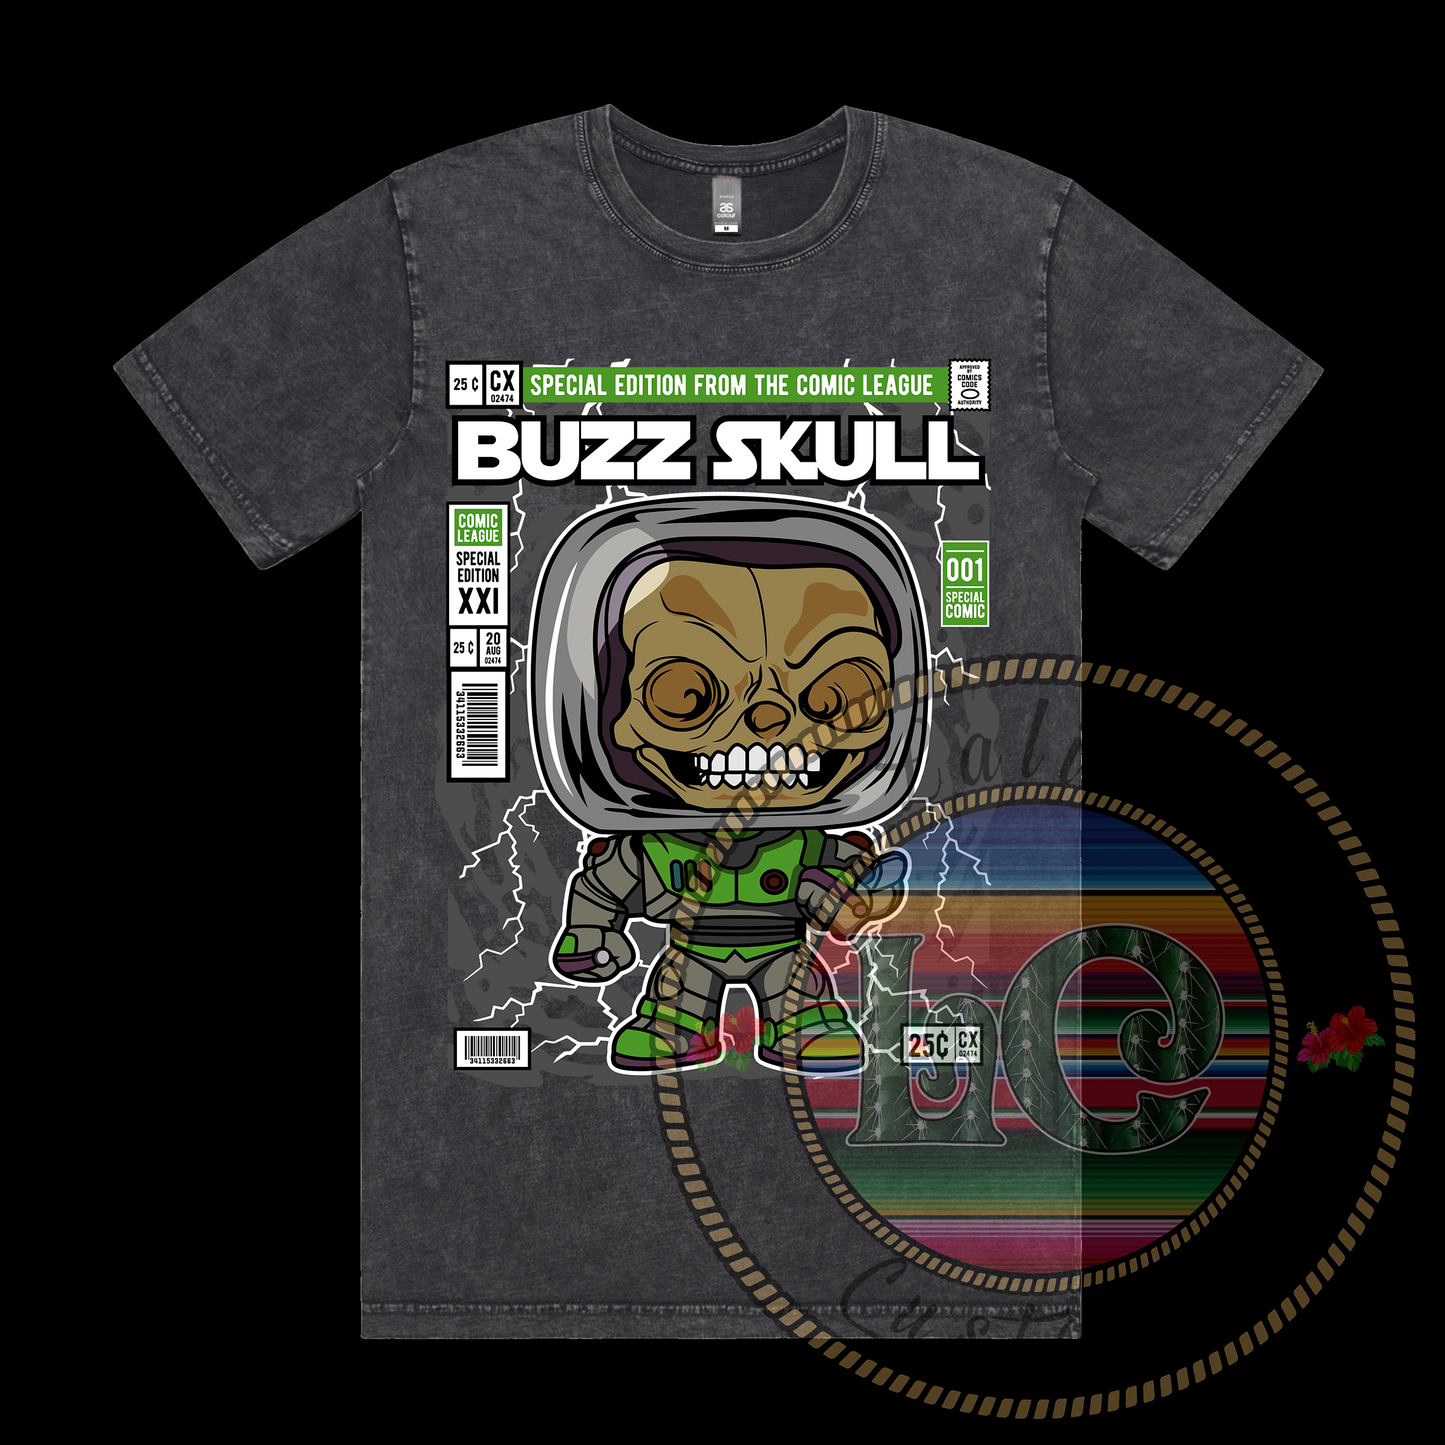 BuzzSkull (Buzz Lightyear) POP Tee